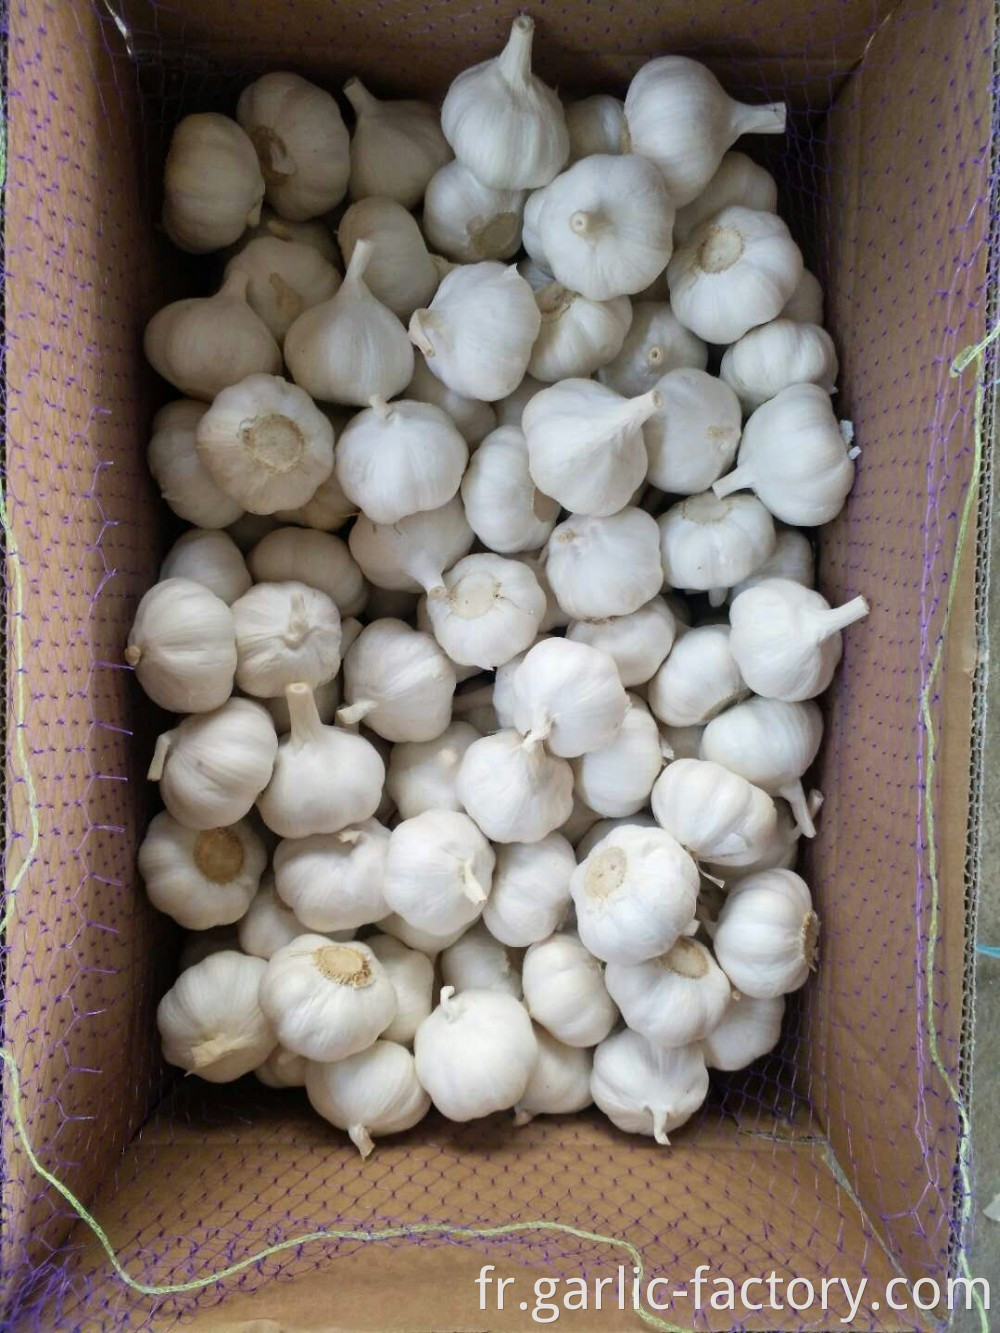 High Quality Fresh Garlic